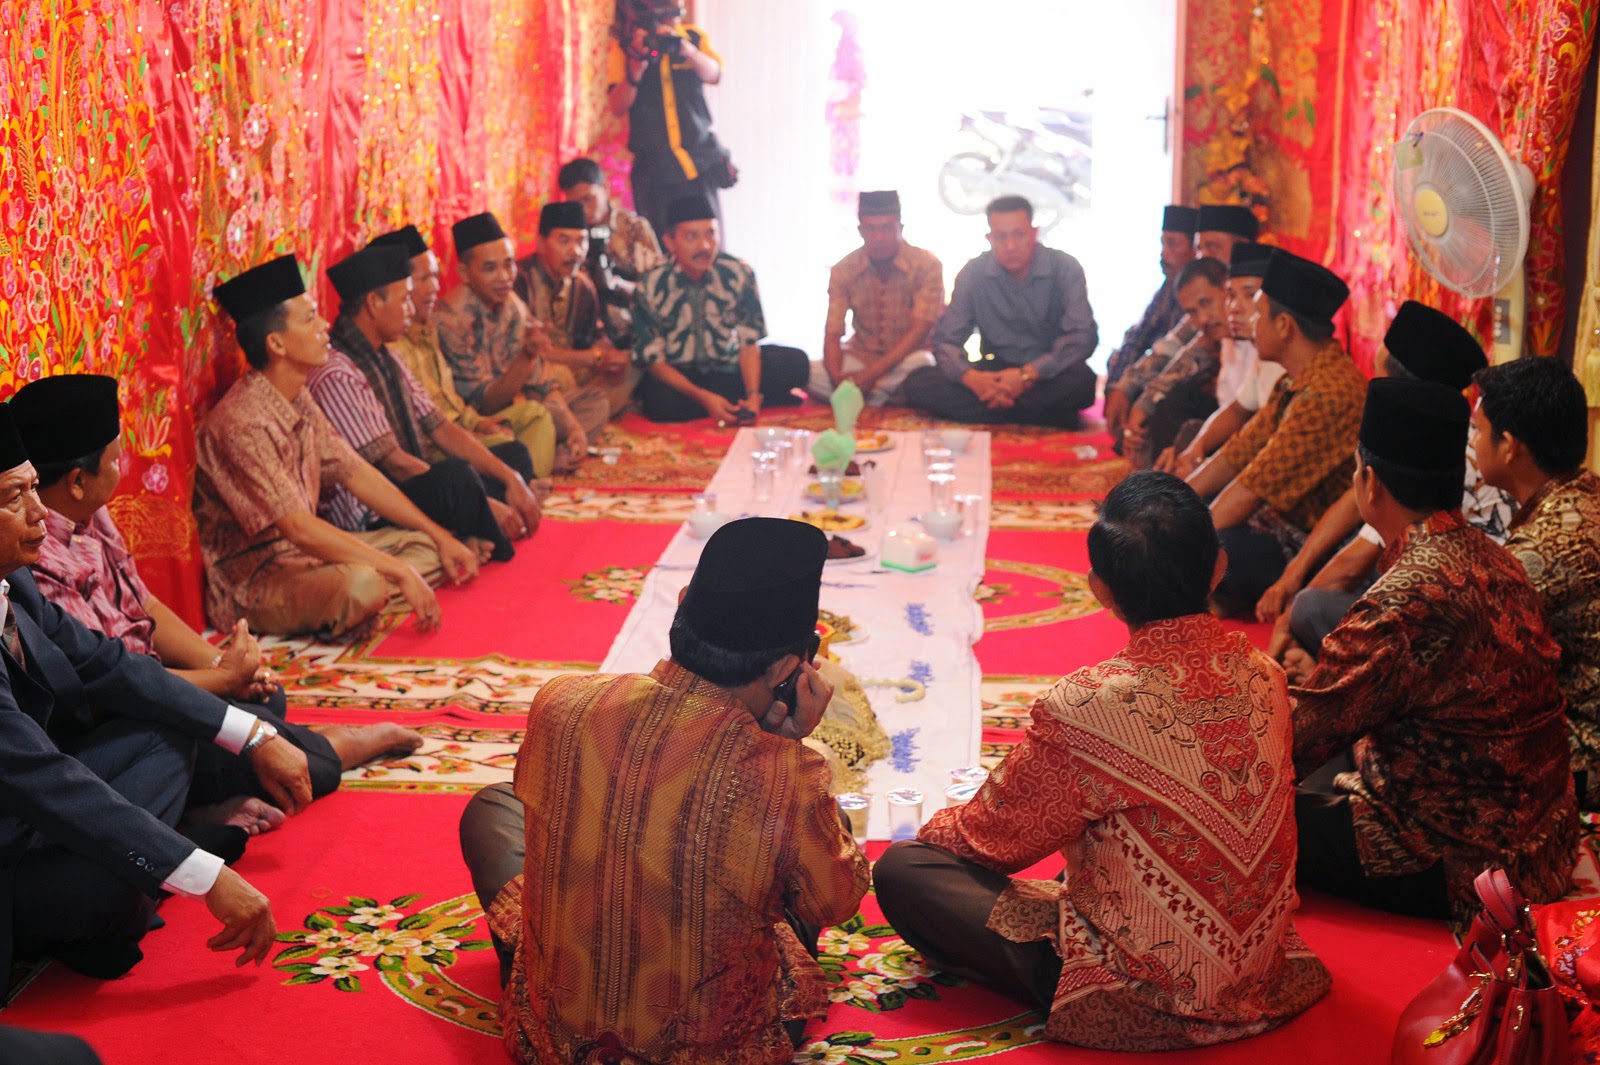 Rangkaian Prosesi Pernikahan Adat Minang yang Penuh Makna